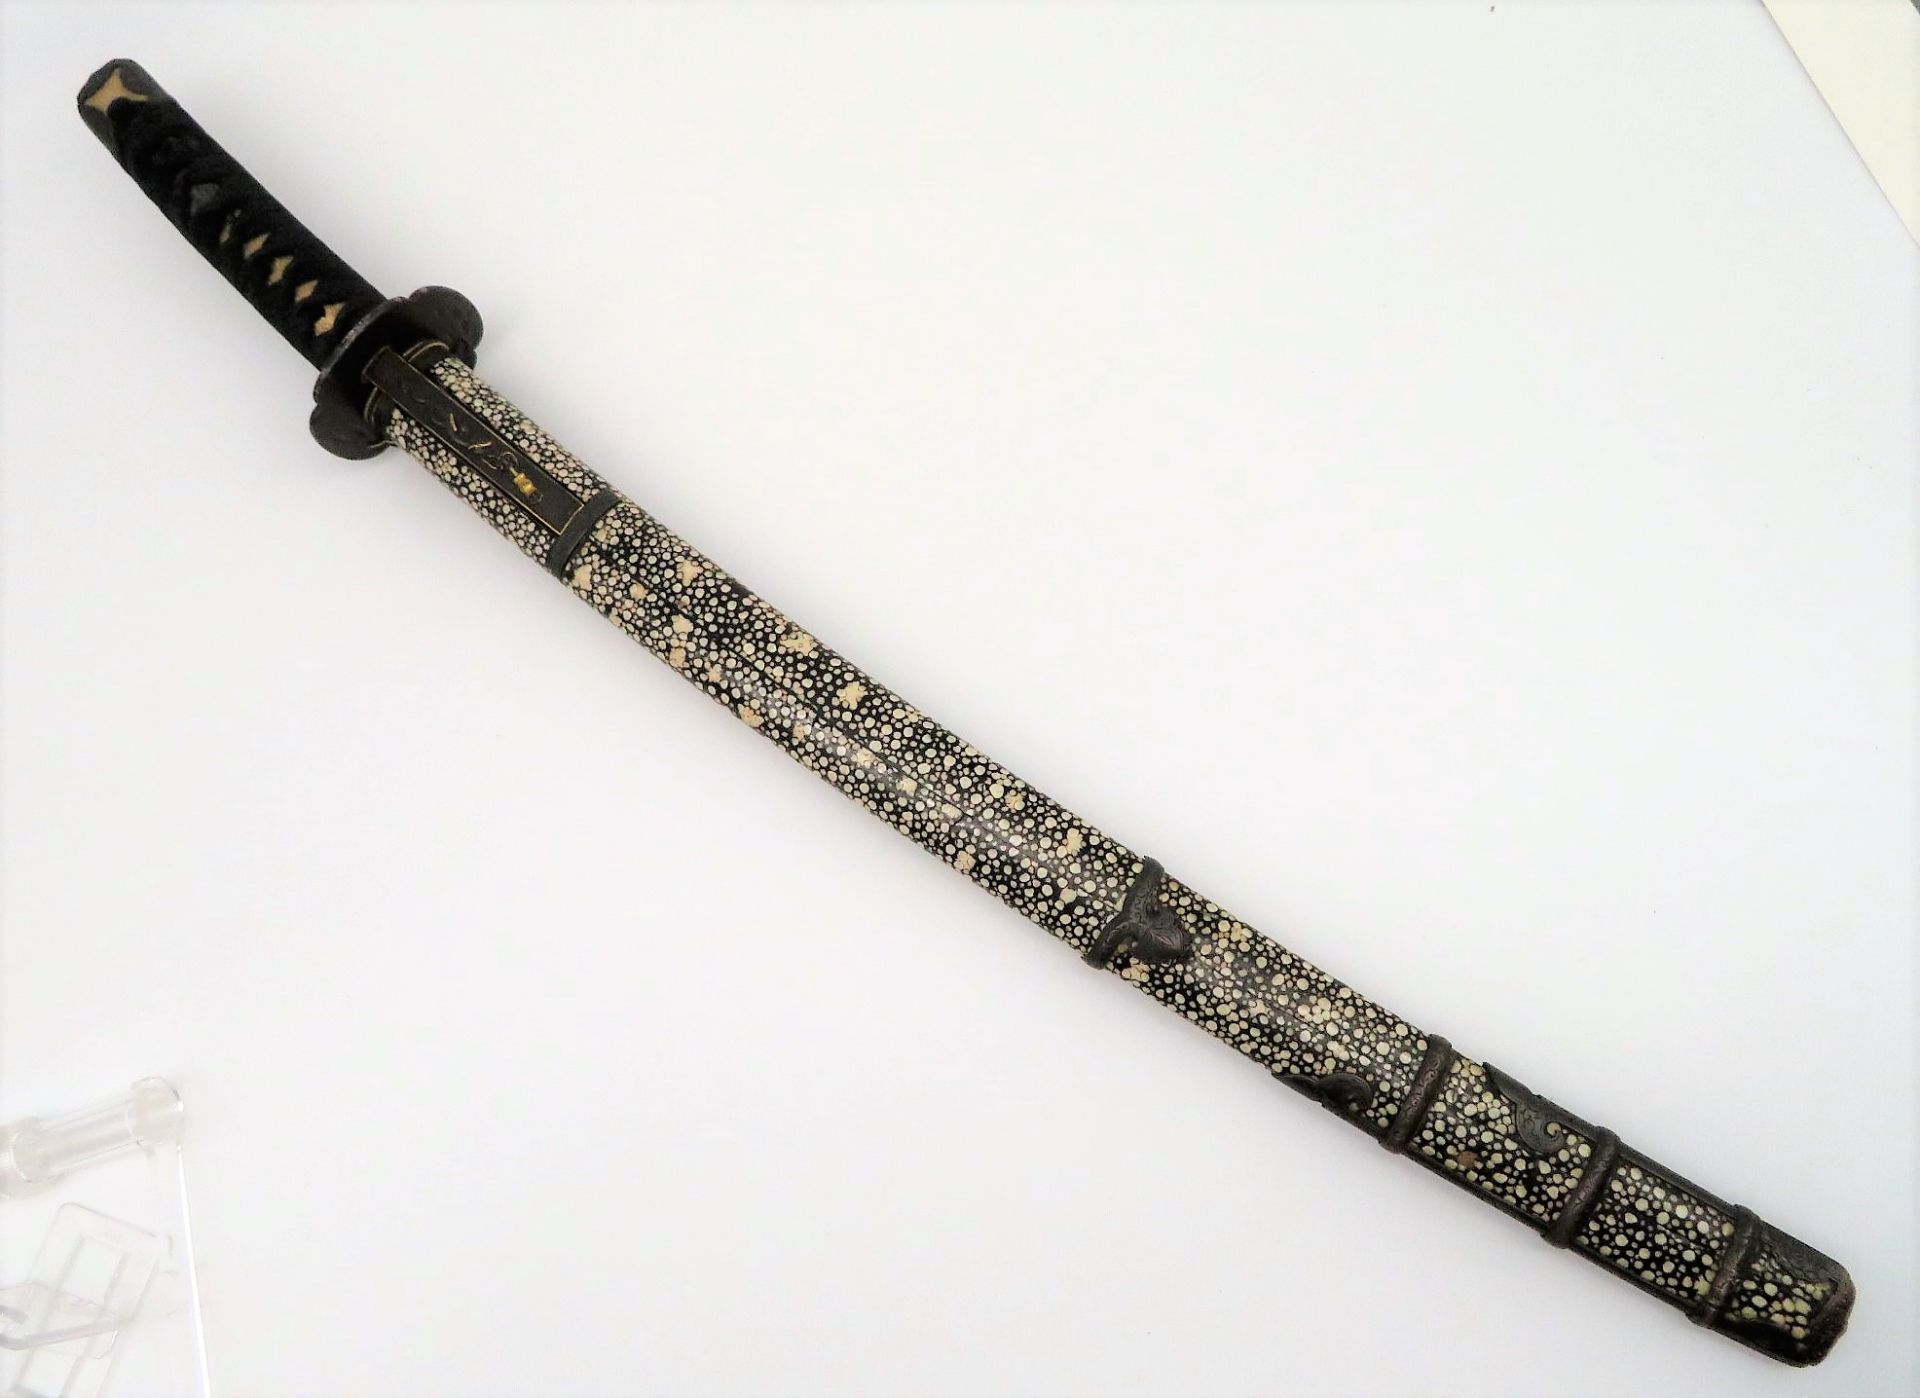 Samurai-Schwert, Japan, wohl Meiji Periode, 1868 - 1912, reiche Bronzeverzierungen, Drachen mit 3 K